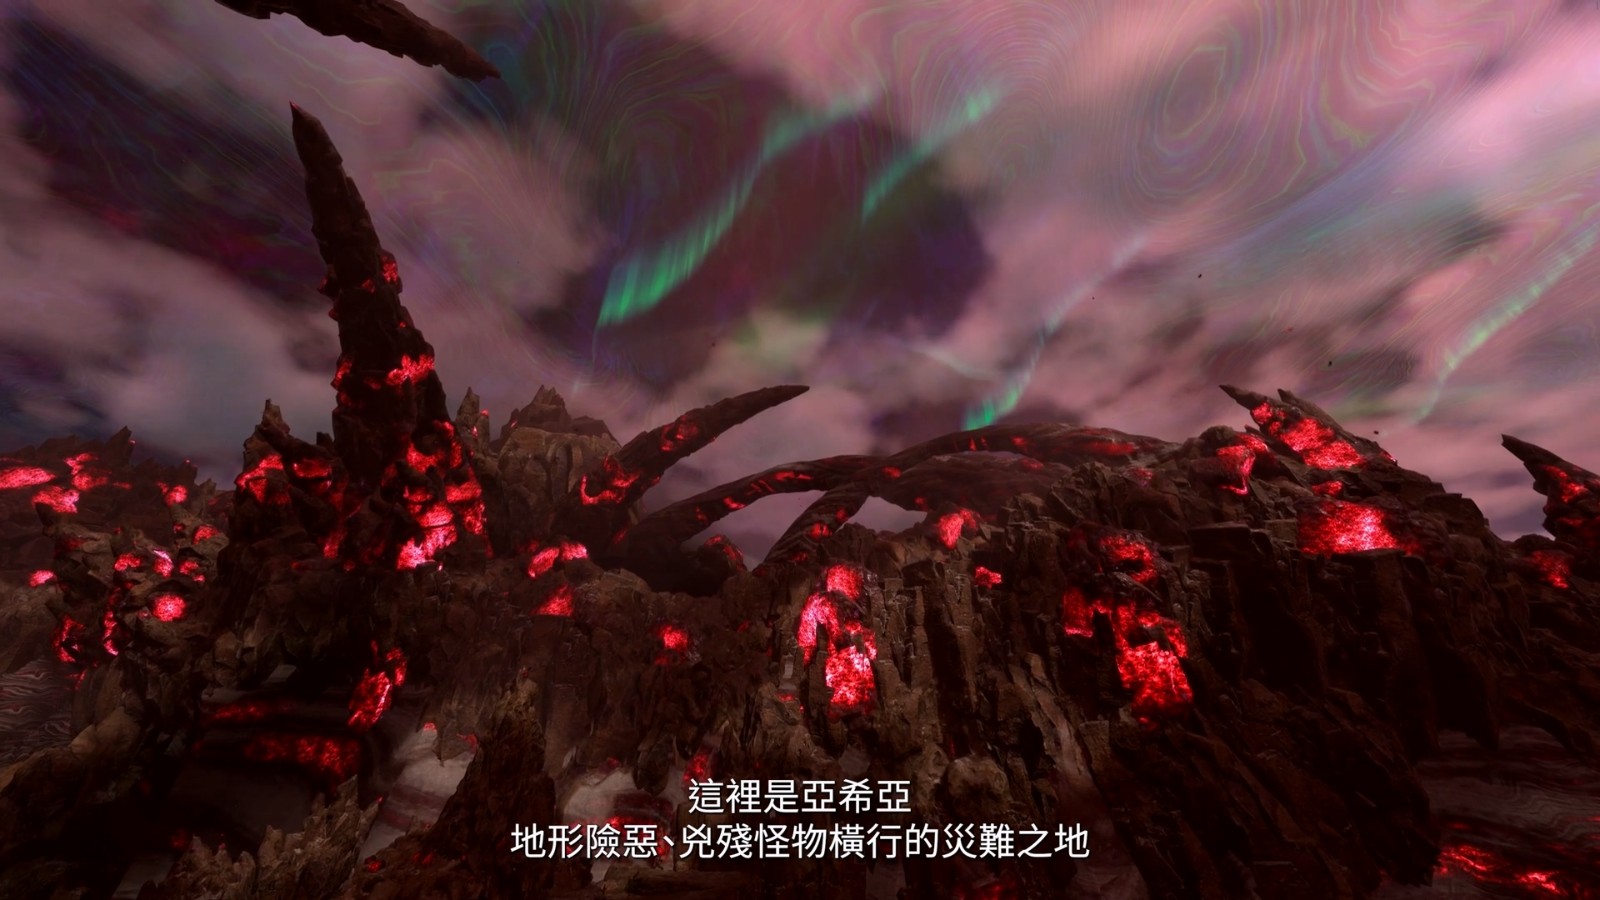 《魔咒之天》“邪术战役”介绍视频 中文字幕